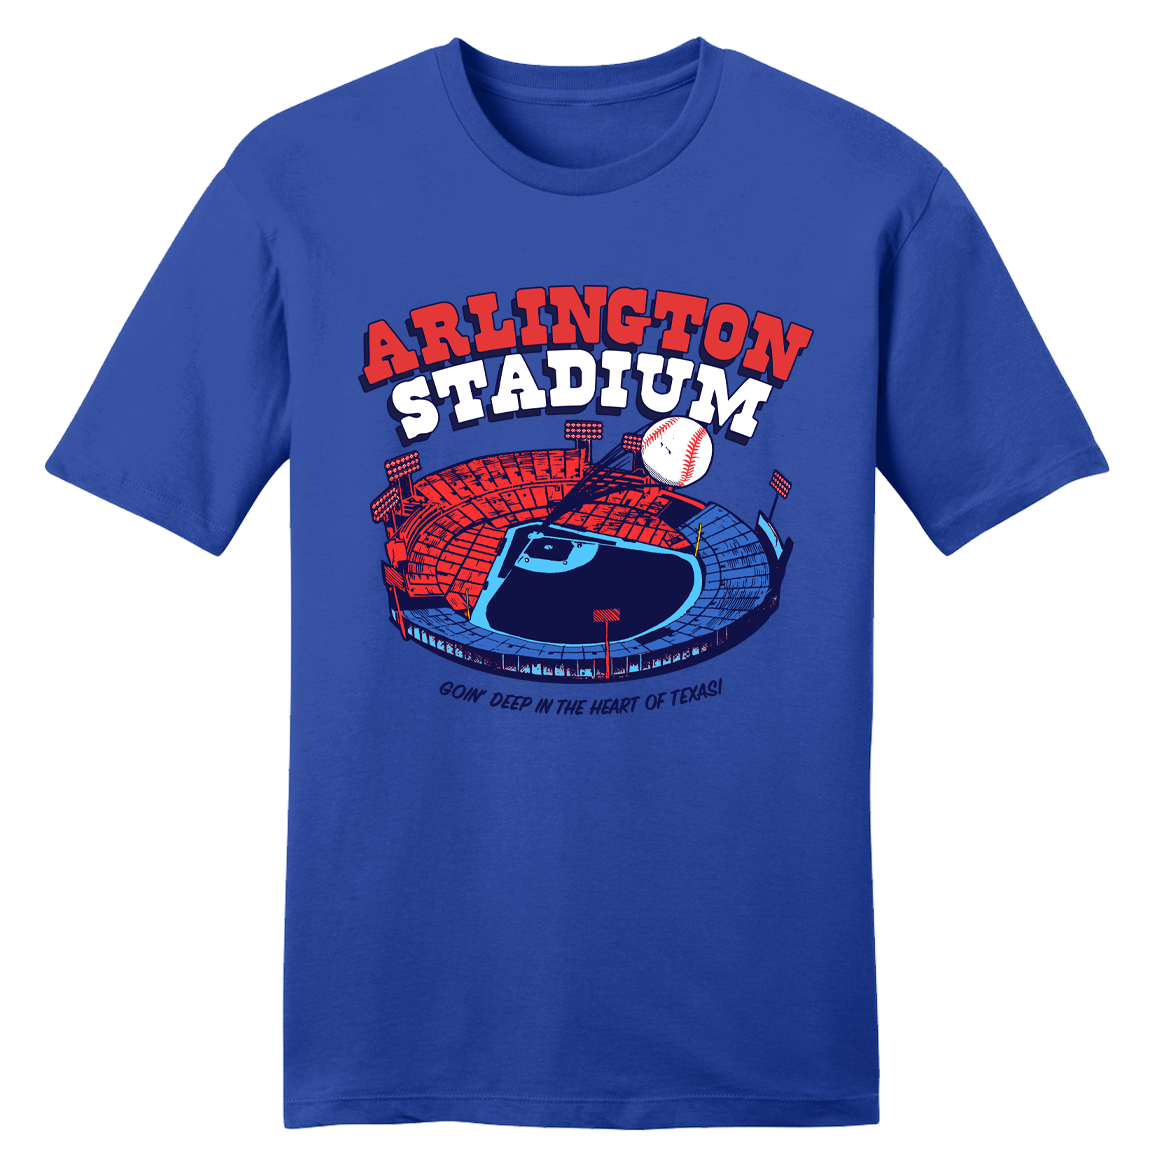 Arlington Stadium Tee | Vintage Stadium Apparel | Old School Shirts ...